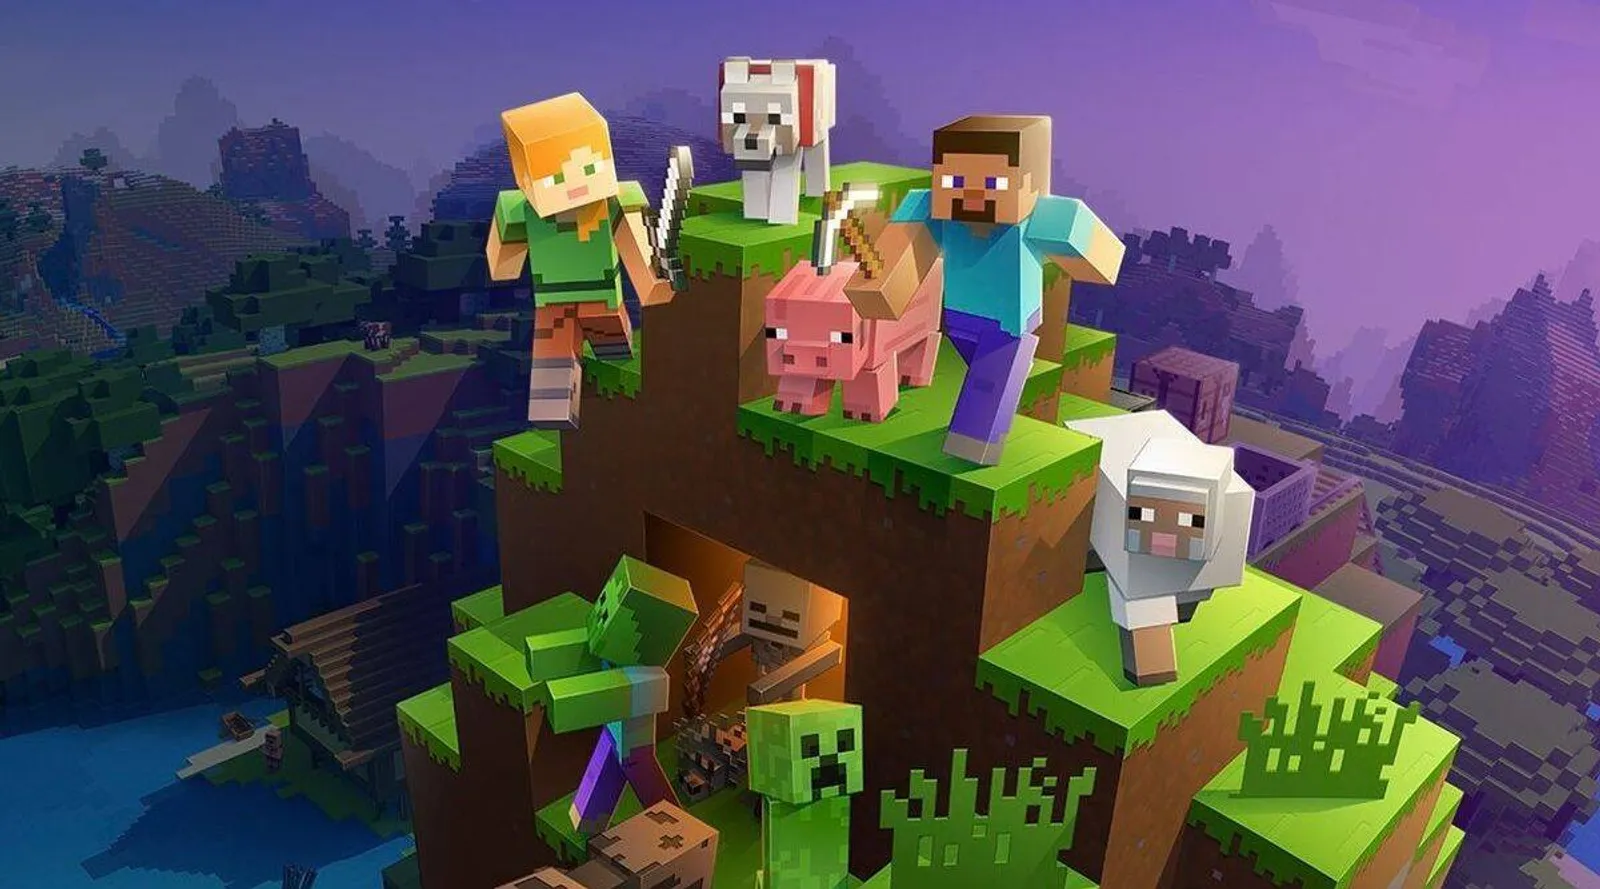 Game Perancang Dunia yang Populer, Ini 9 Fakta Mengenai 'Minecraft'